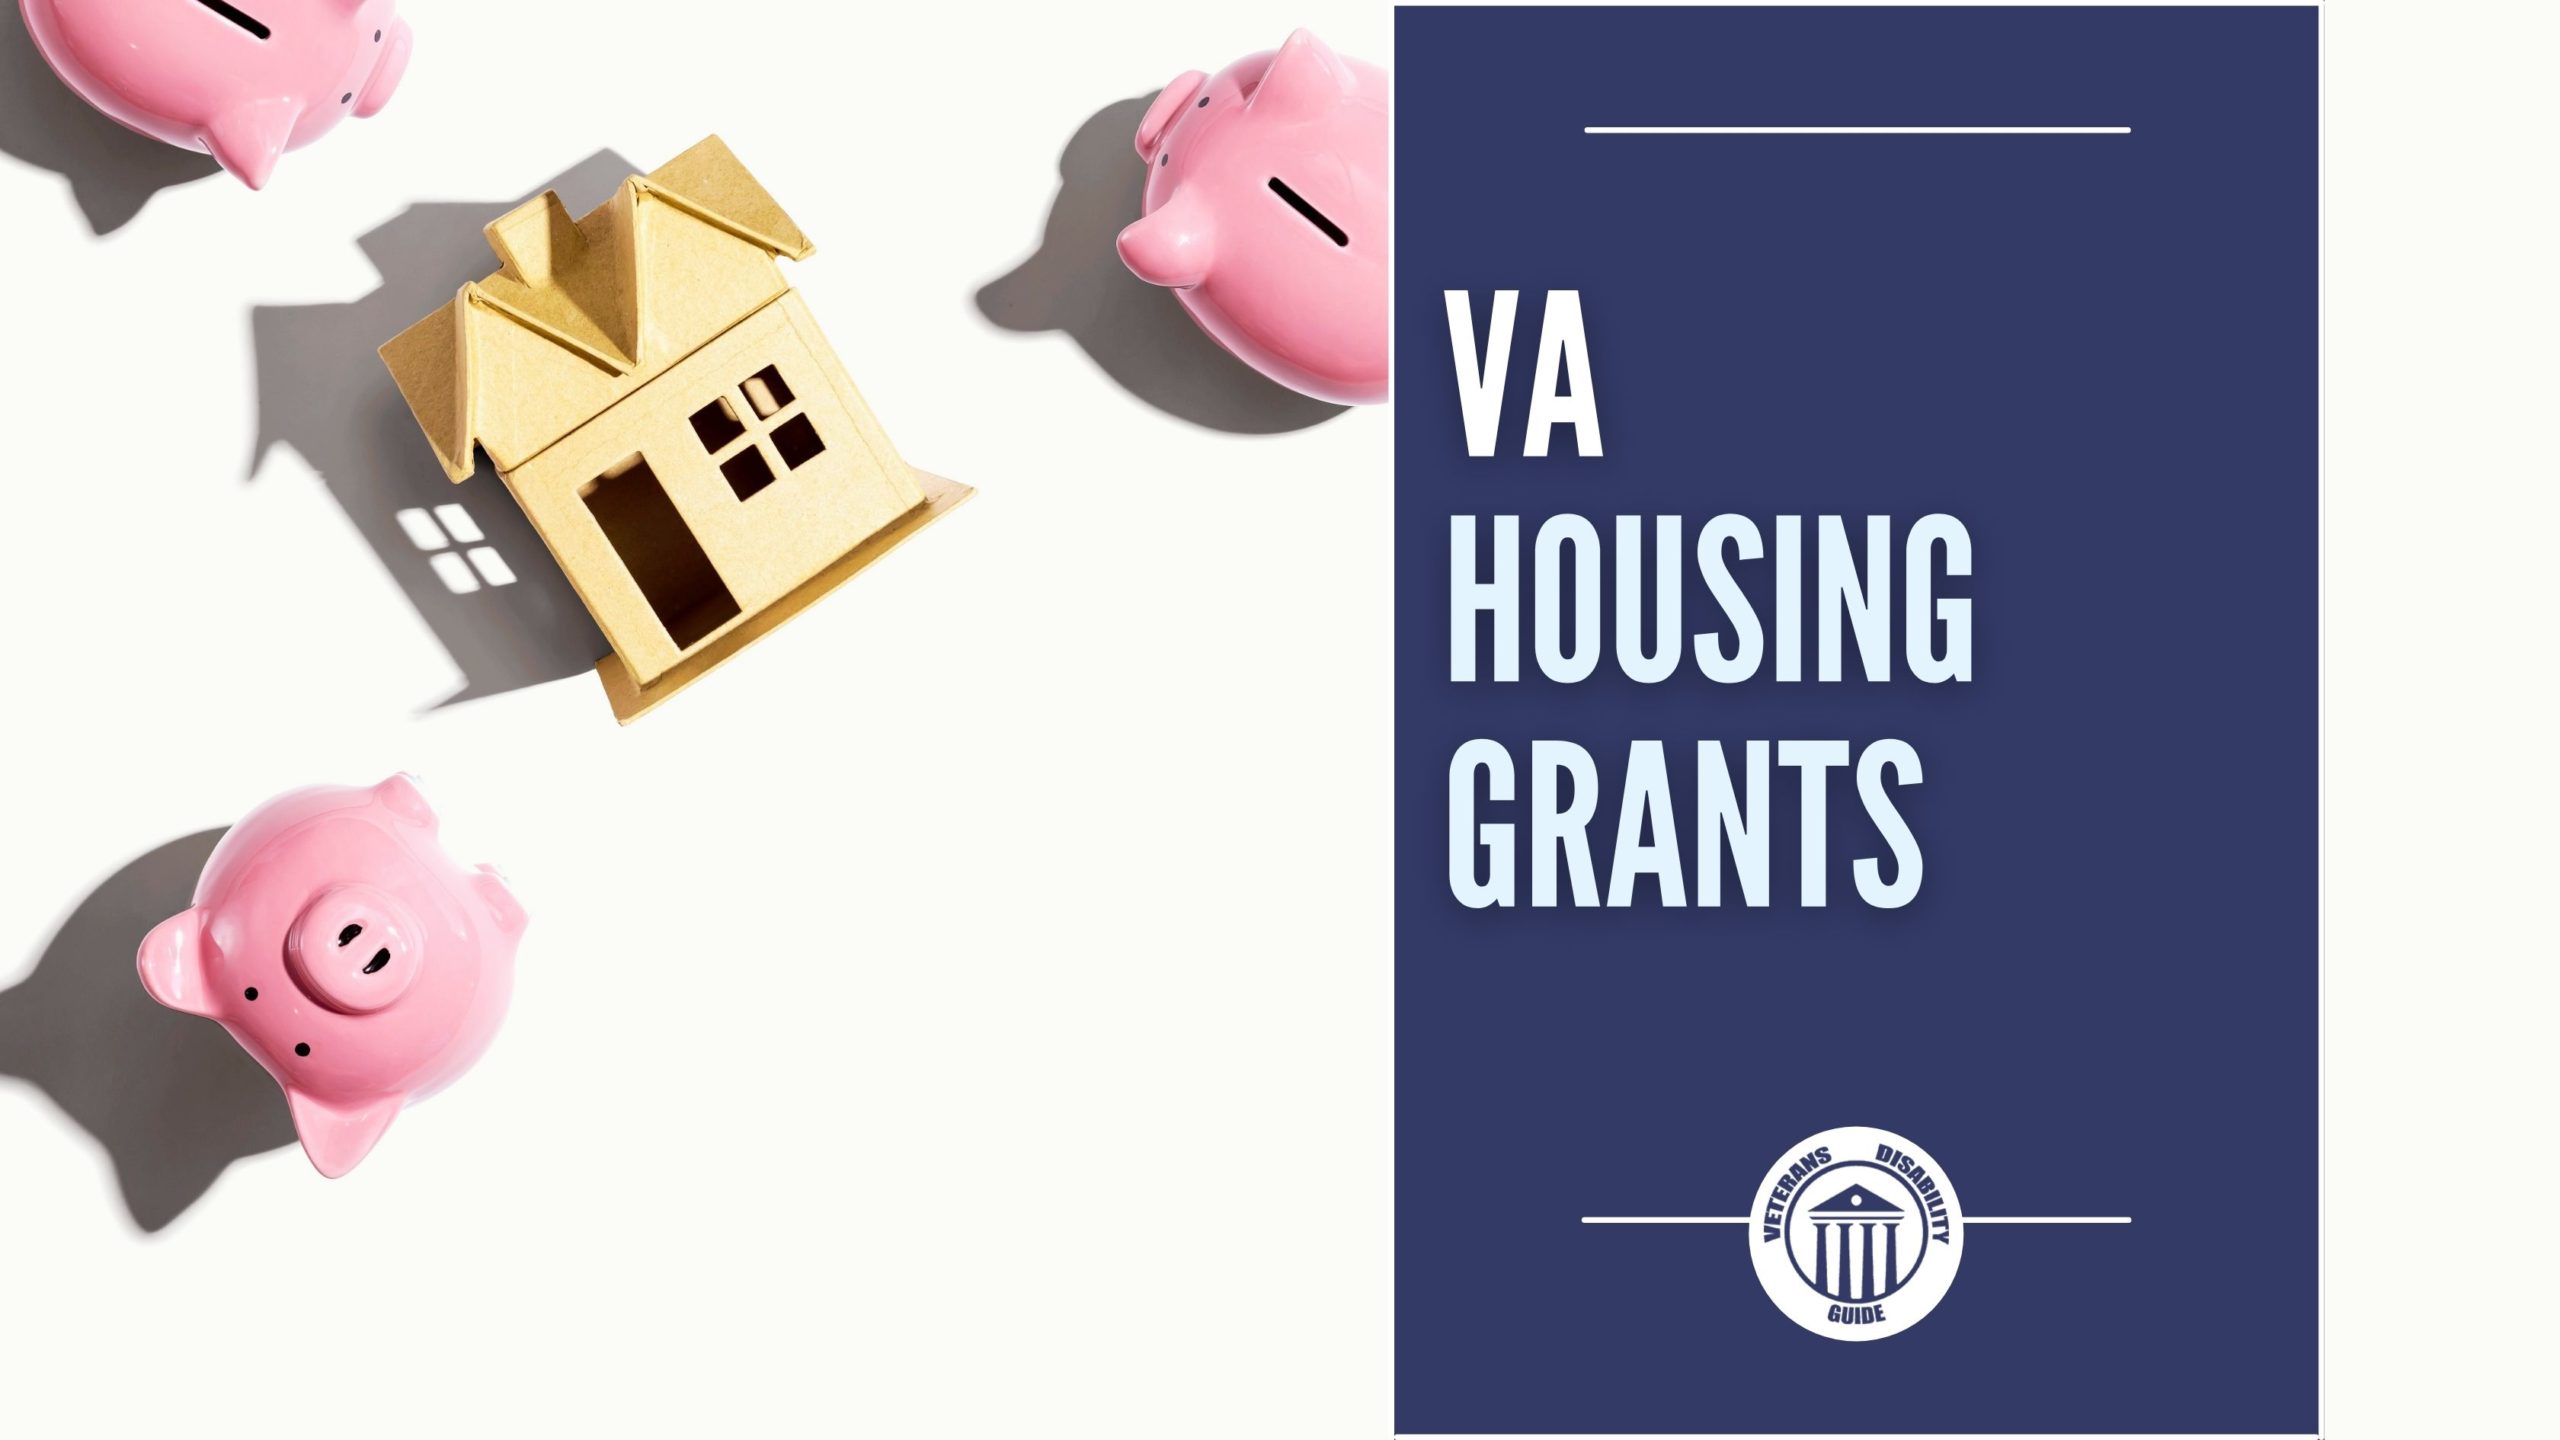 VA Housing Grants blog header image